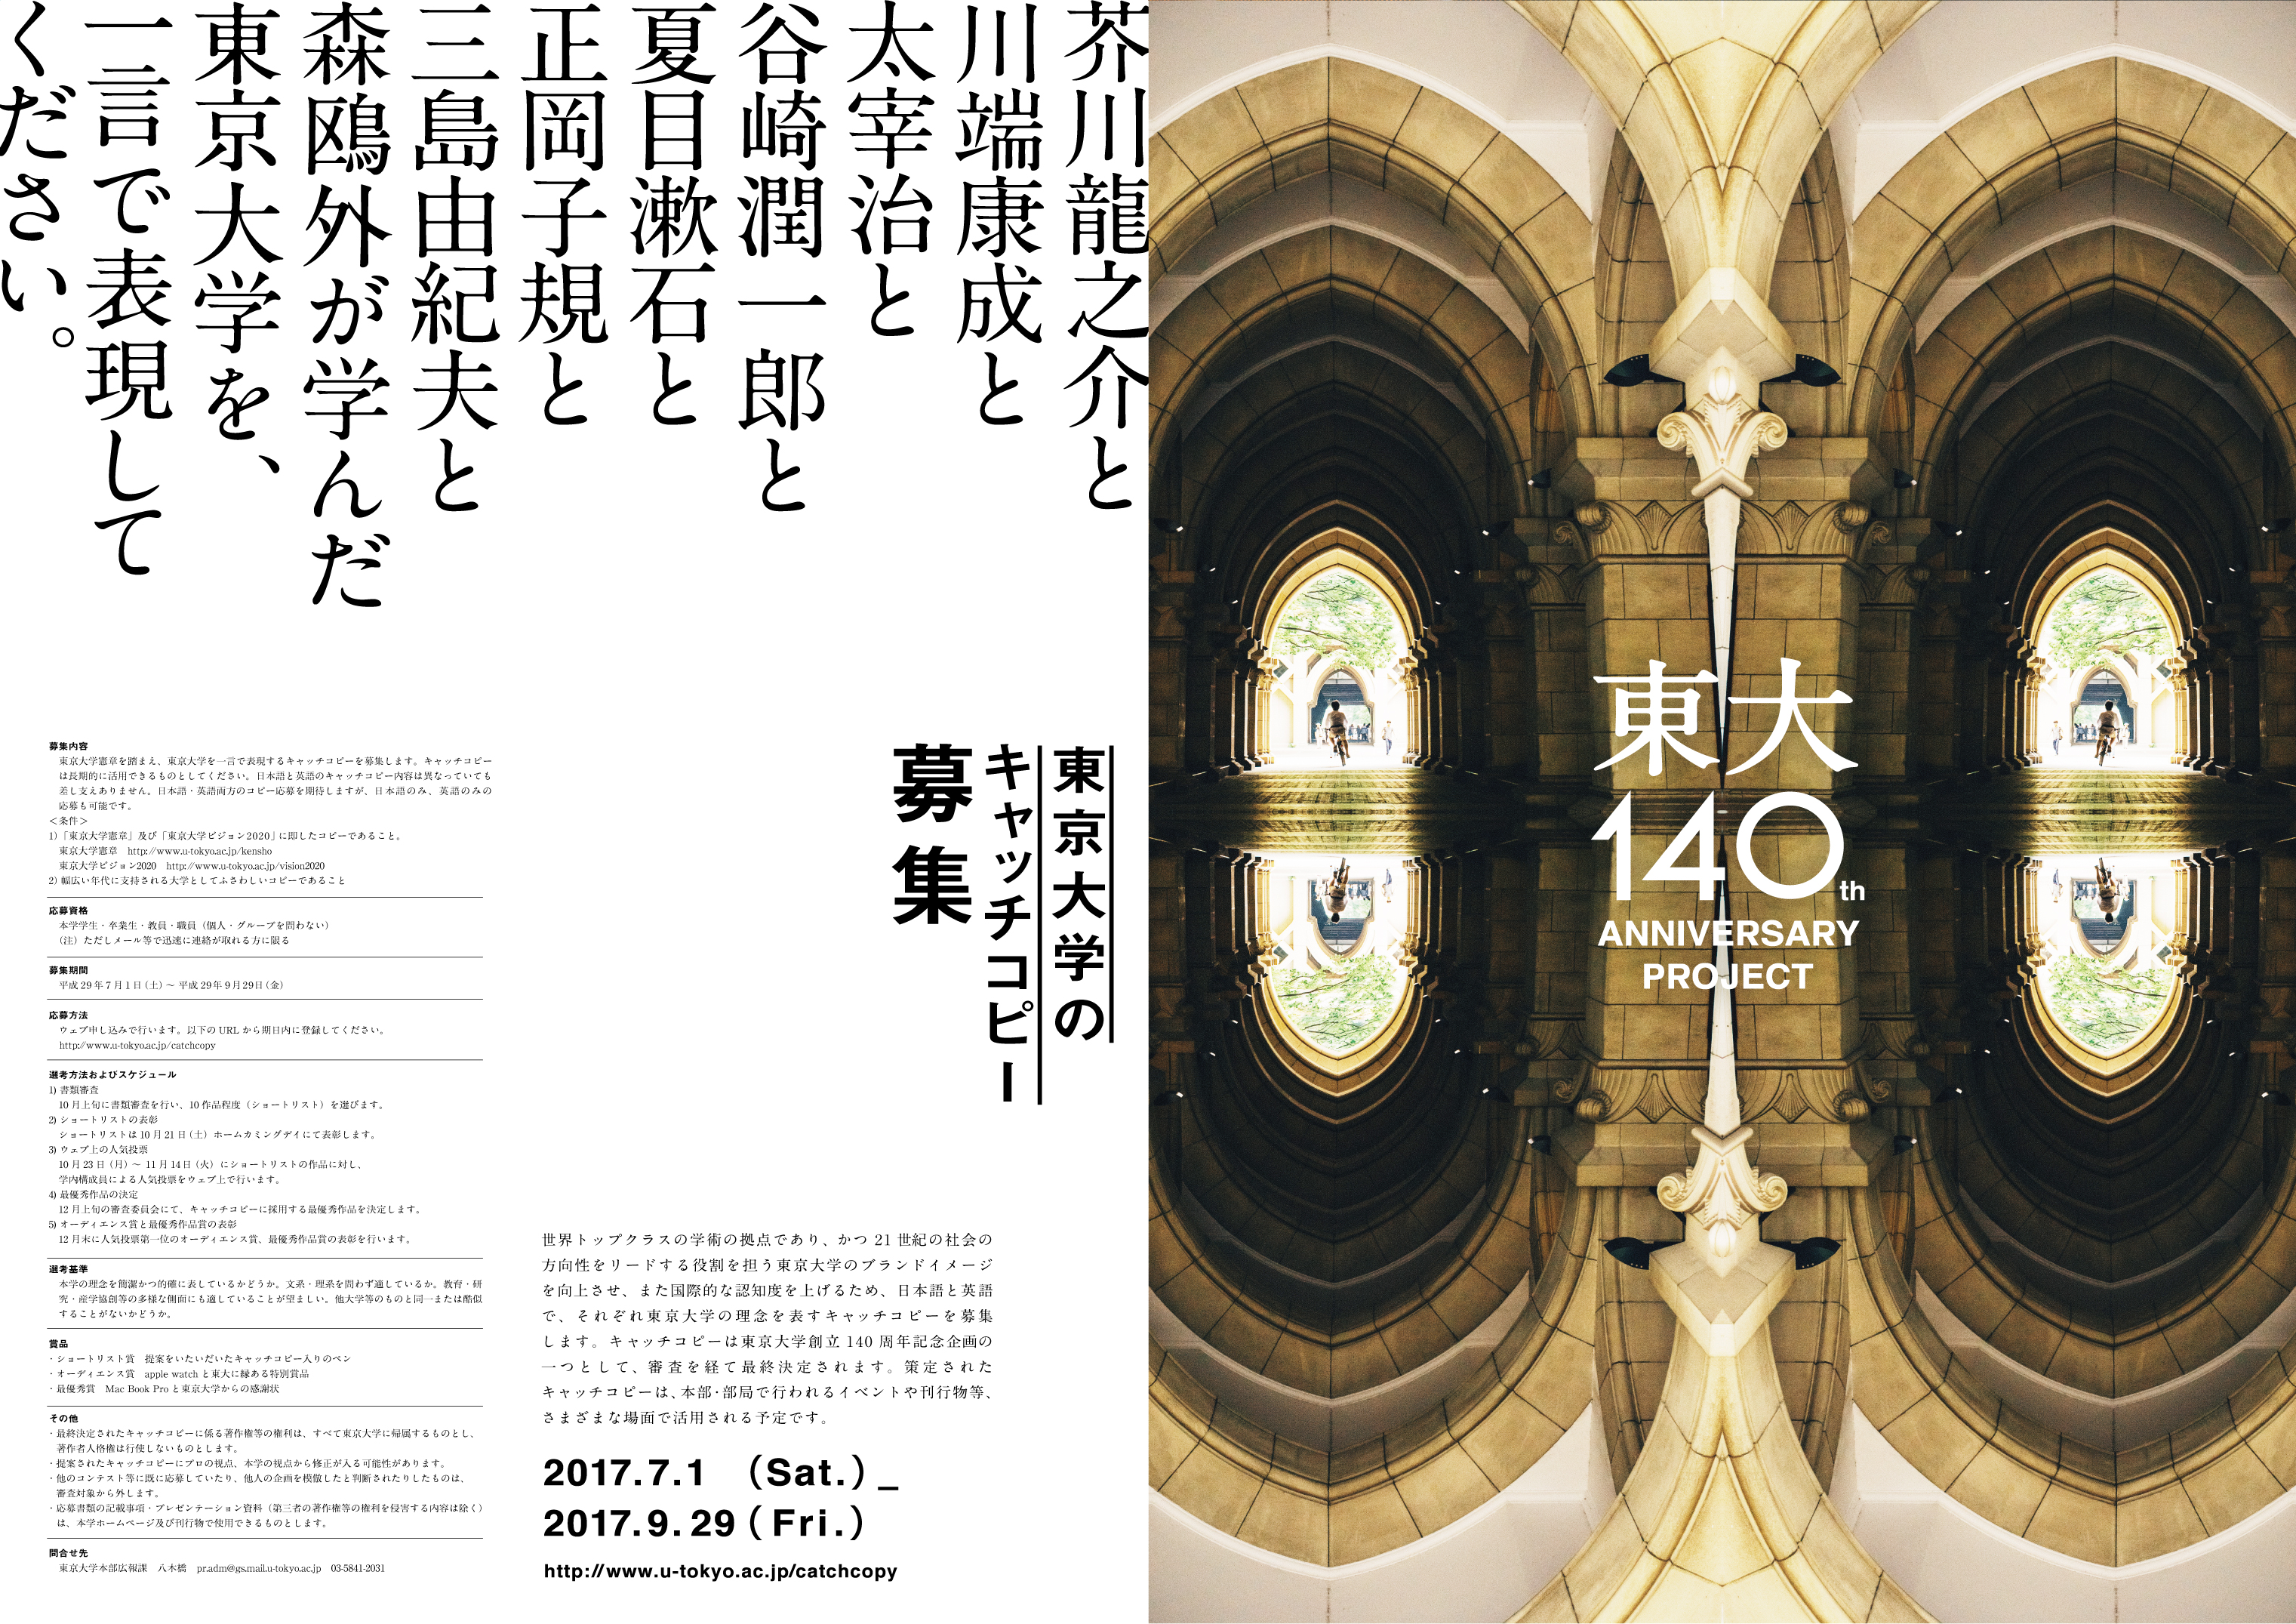 東京大学創設140周年企画 東京大学キャッチコピー が決定しました 東京大学